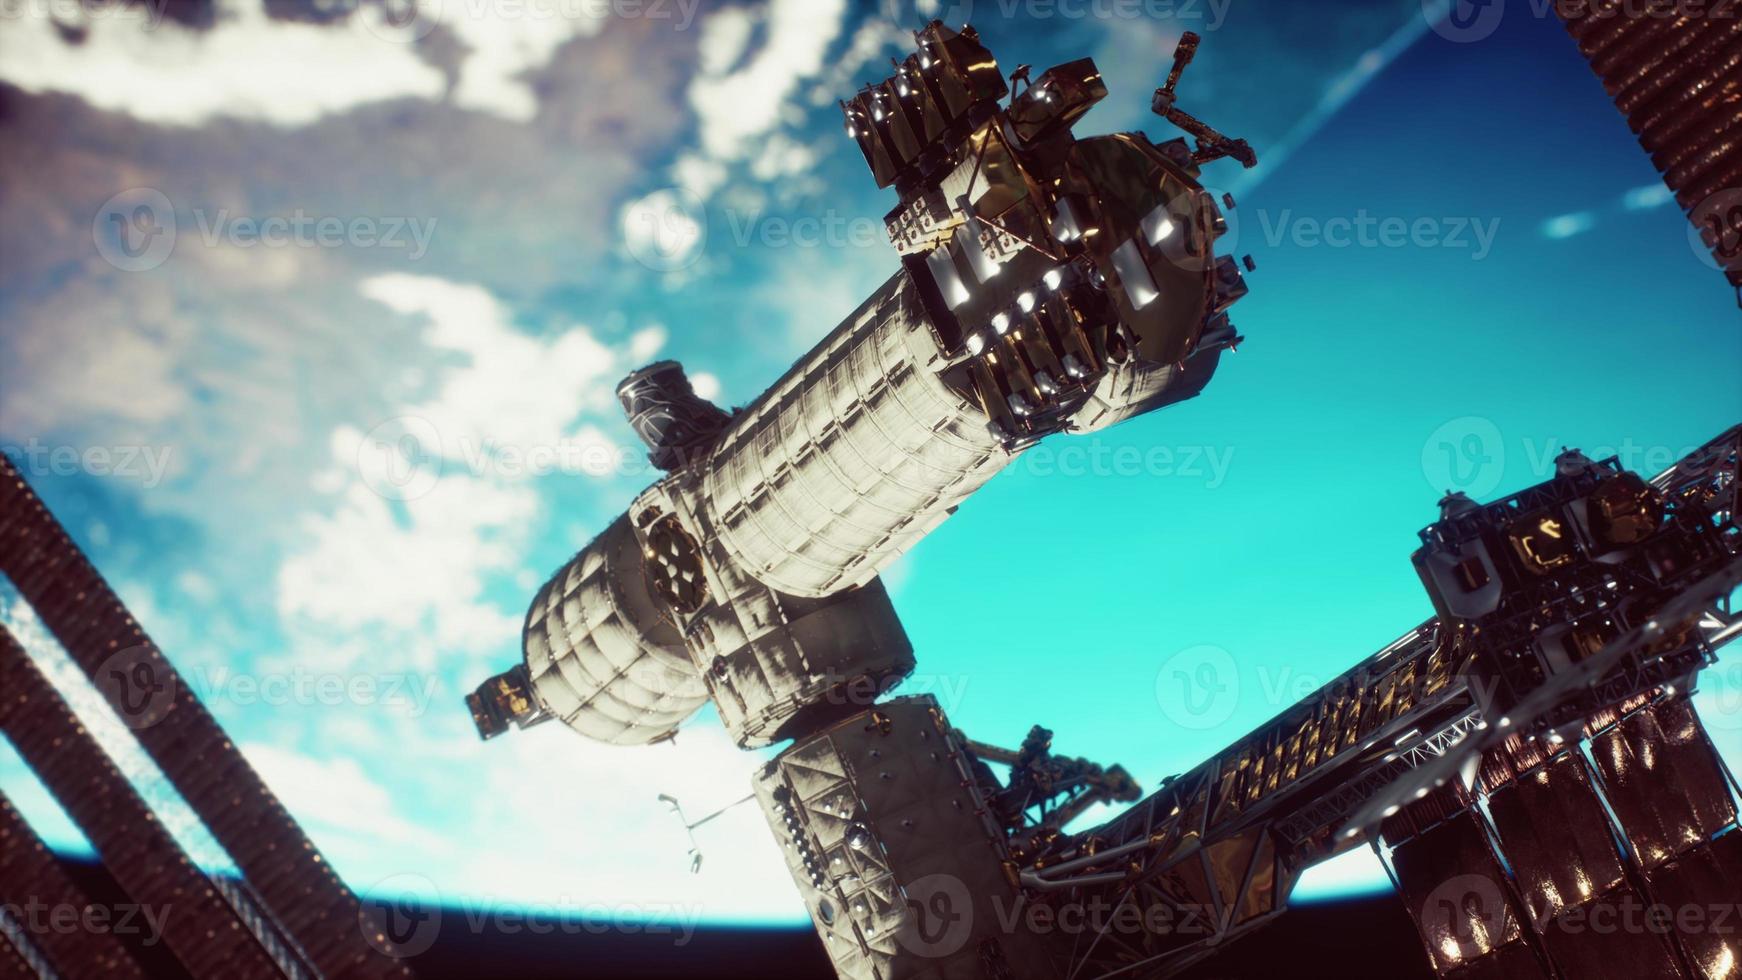 estação espacial internacional sobre os elementos da terra fornecidos pela nasa foto